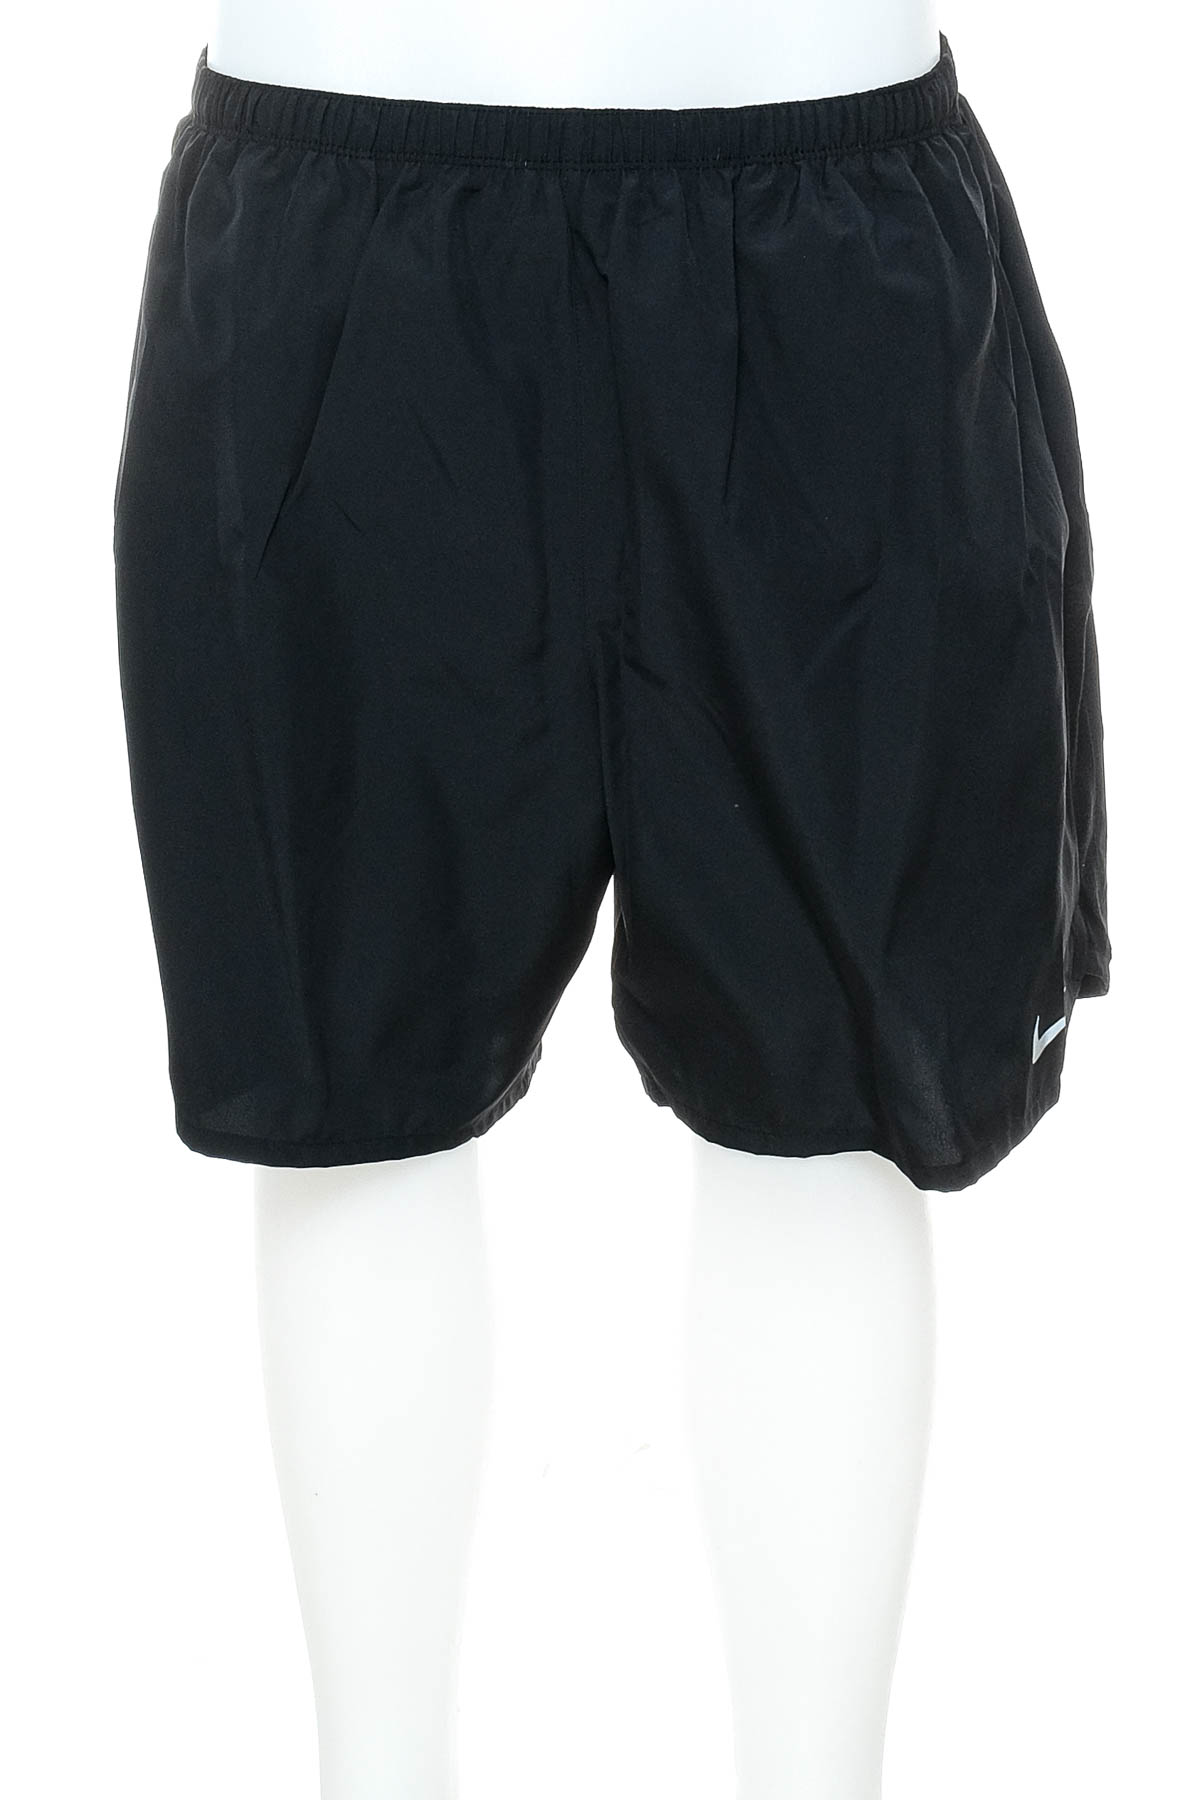 Men's shorts - NIKE - 0